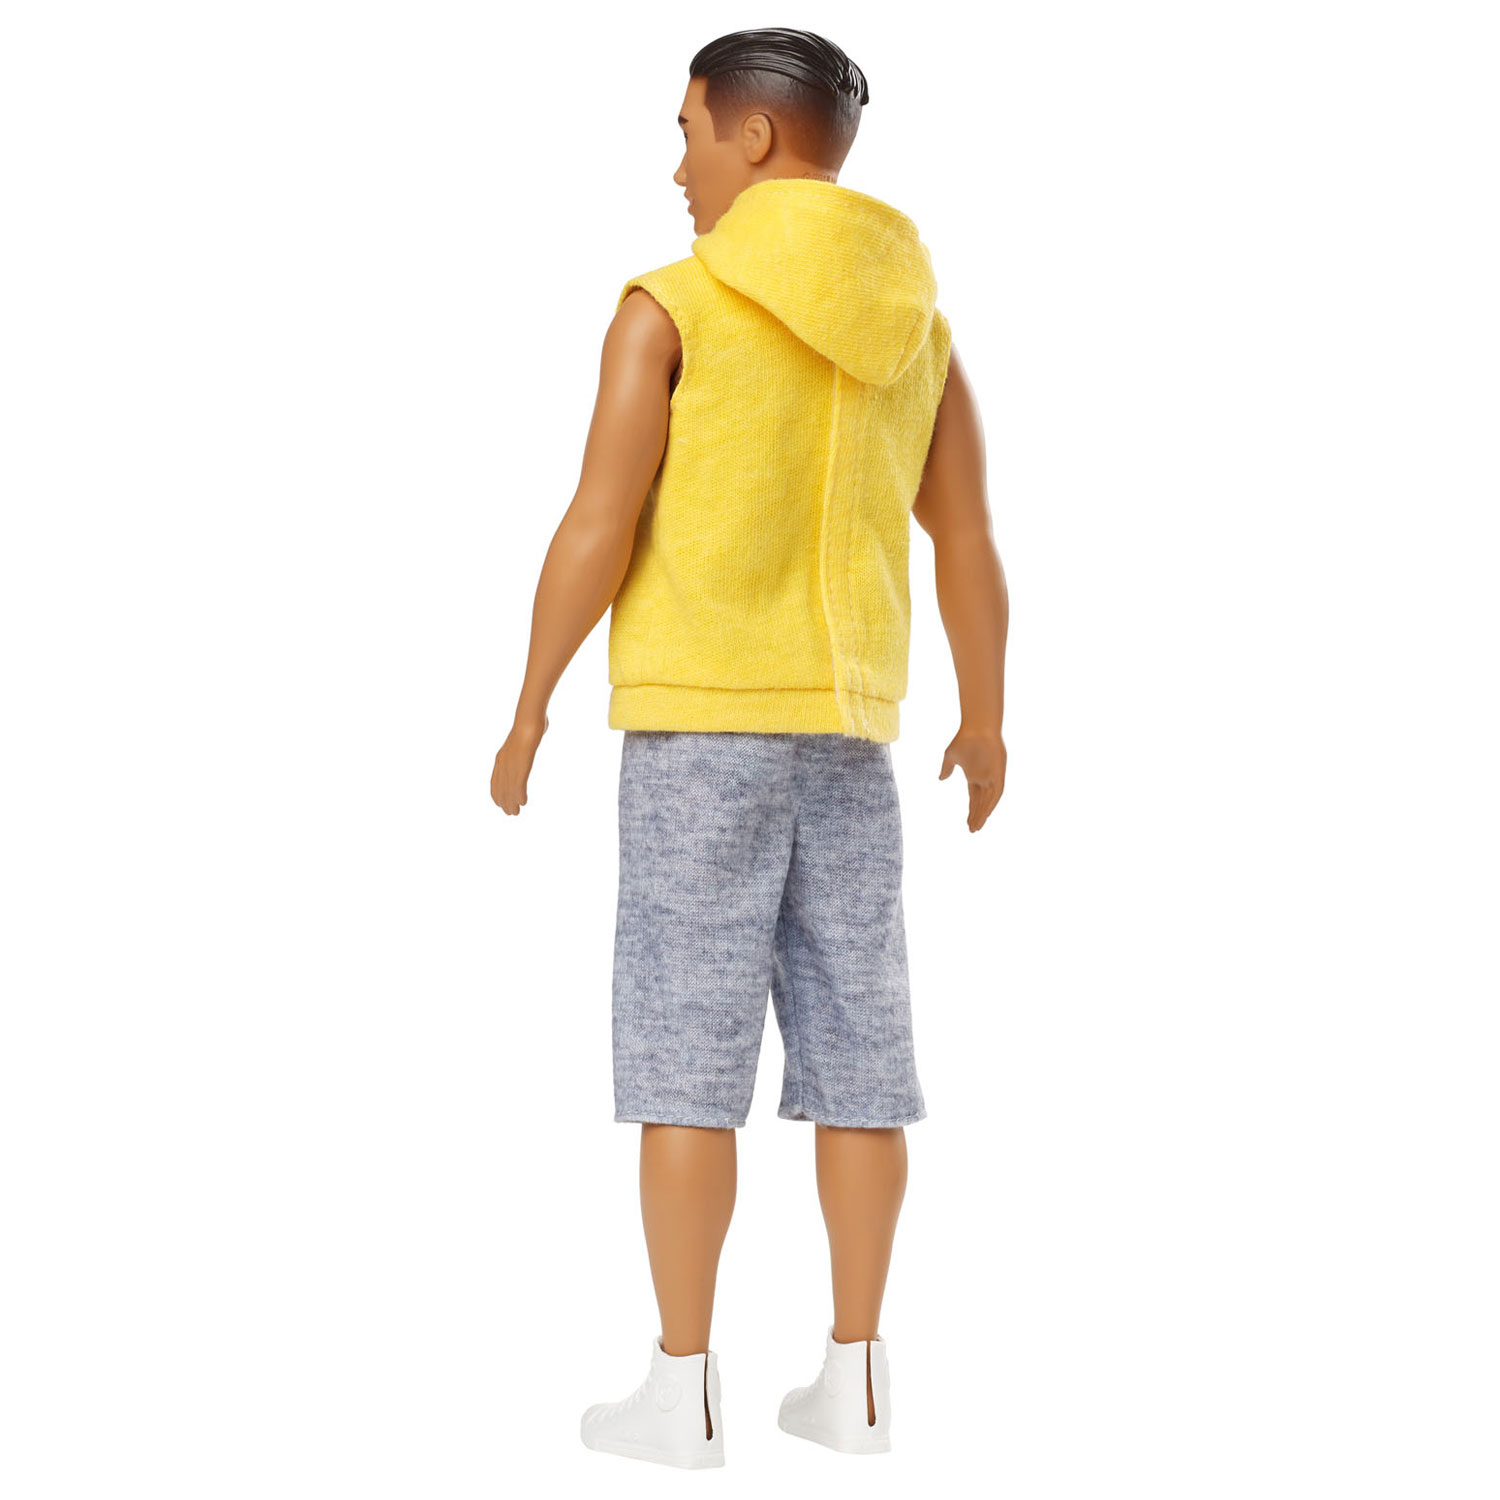 Barbie Ken Fashionistas pop - Gele hoodie